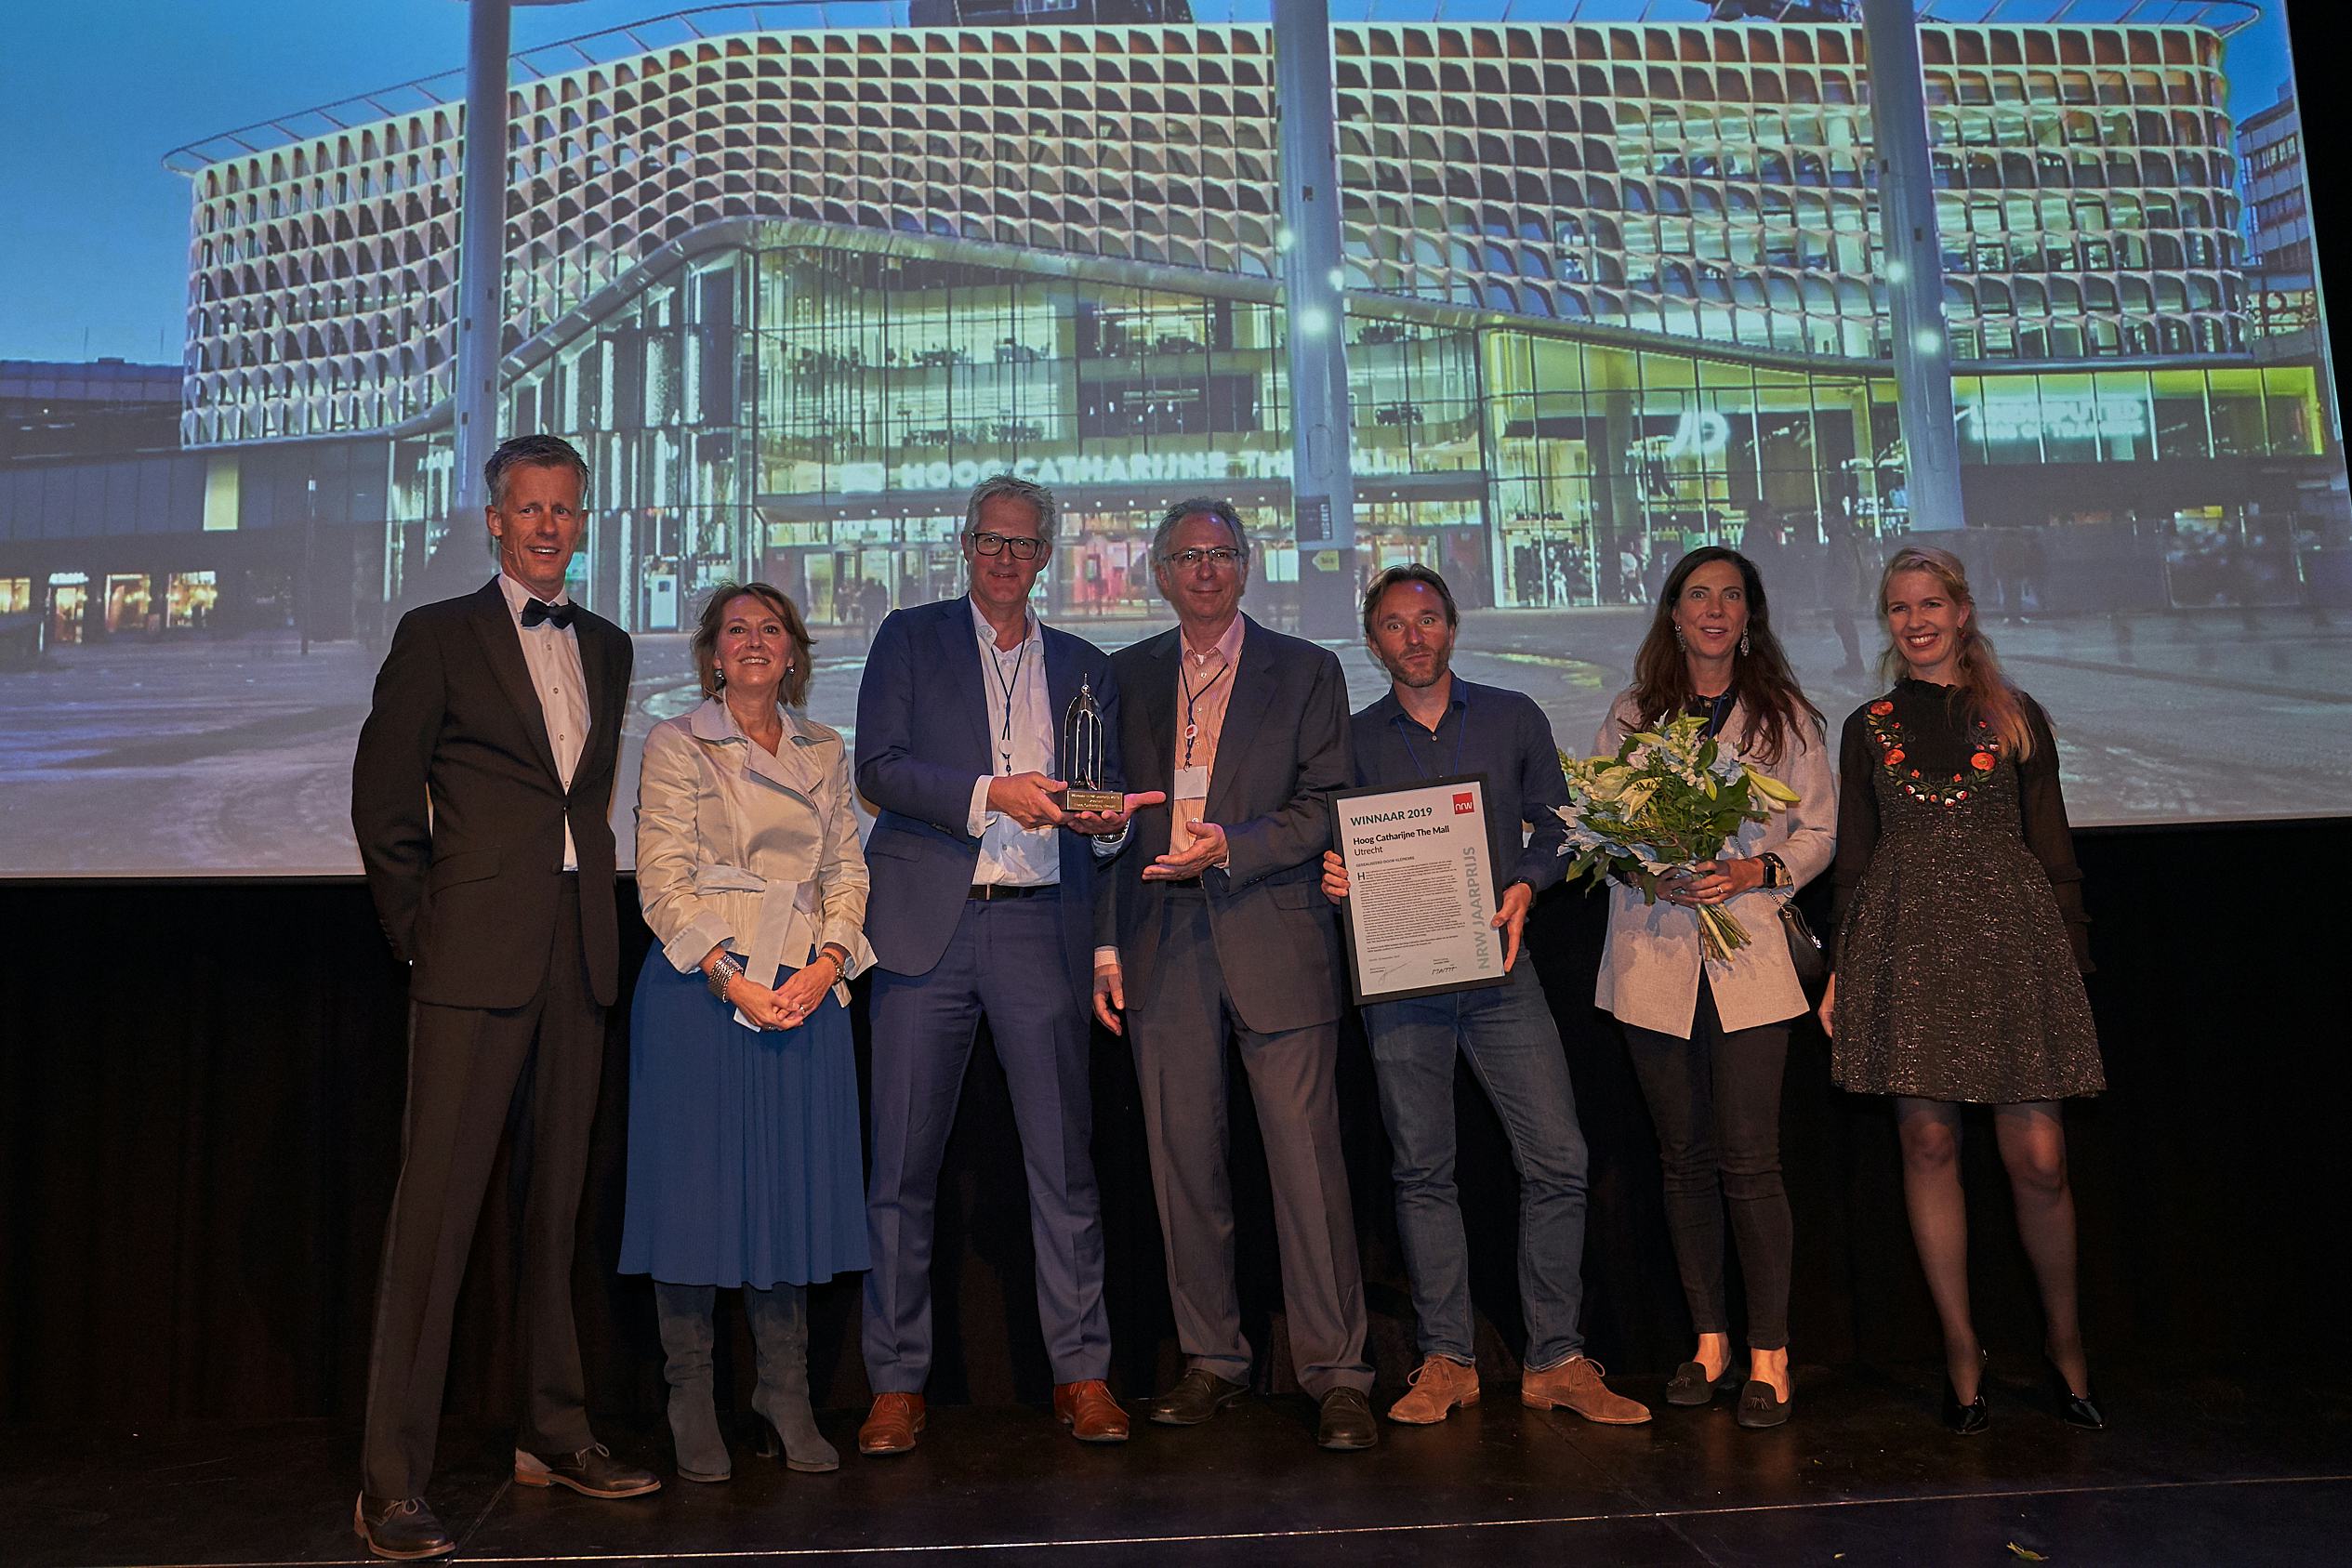 Hoog Catharijne wint NRW-jaarprijs 2019